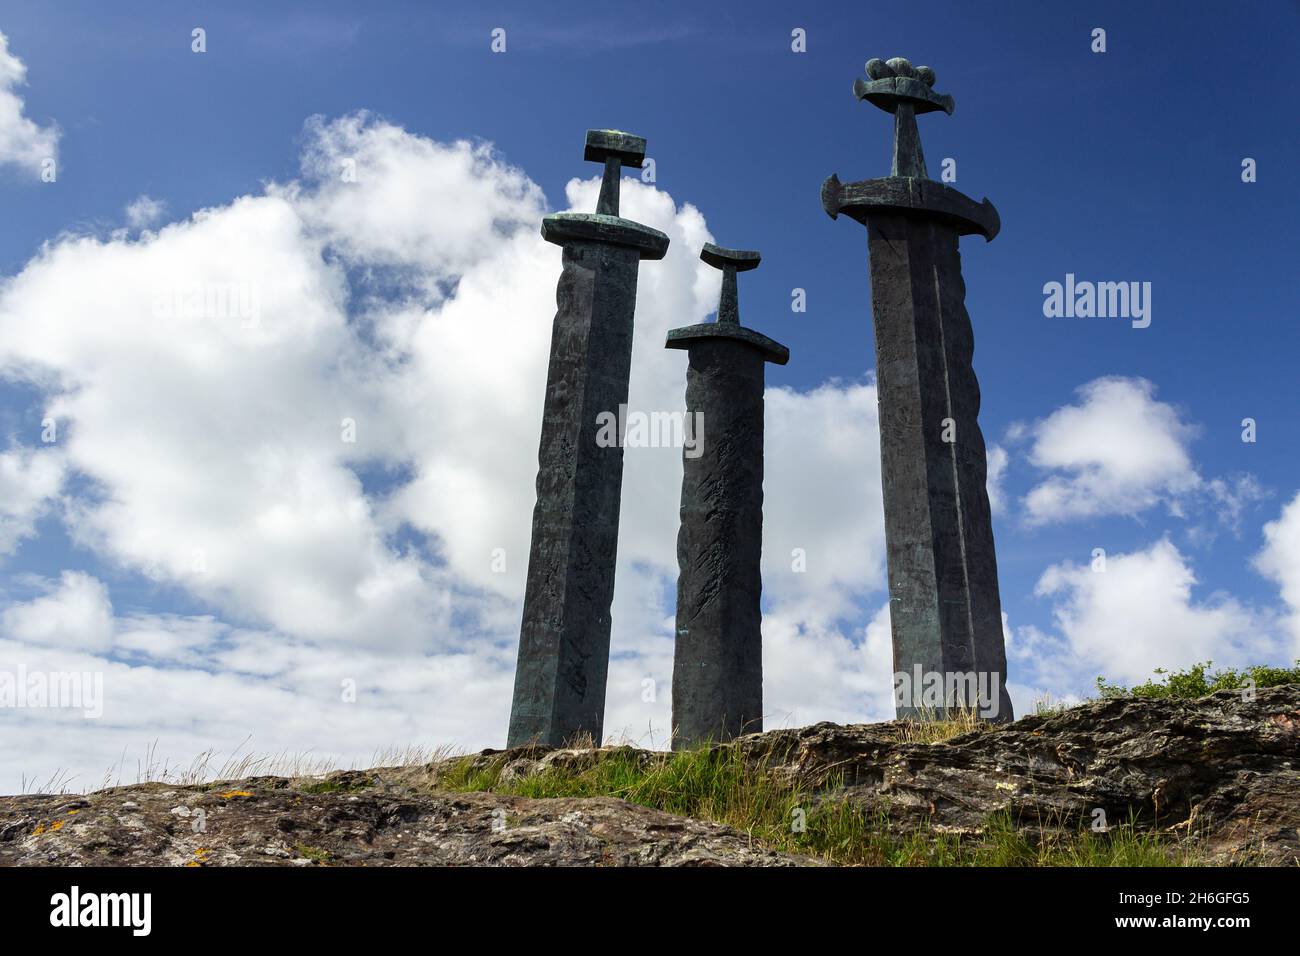 Stavanger, Norvegia: Monumento a Sverd i fjell (Spade in Rock), Mollebukta, che commemora la battaglia nel fiordo di Hafrsfjord (872). Creato da Fritz Roed Foto Stock